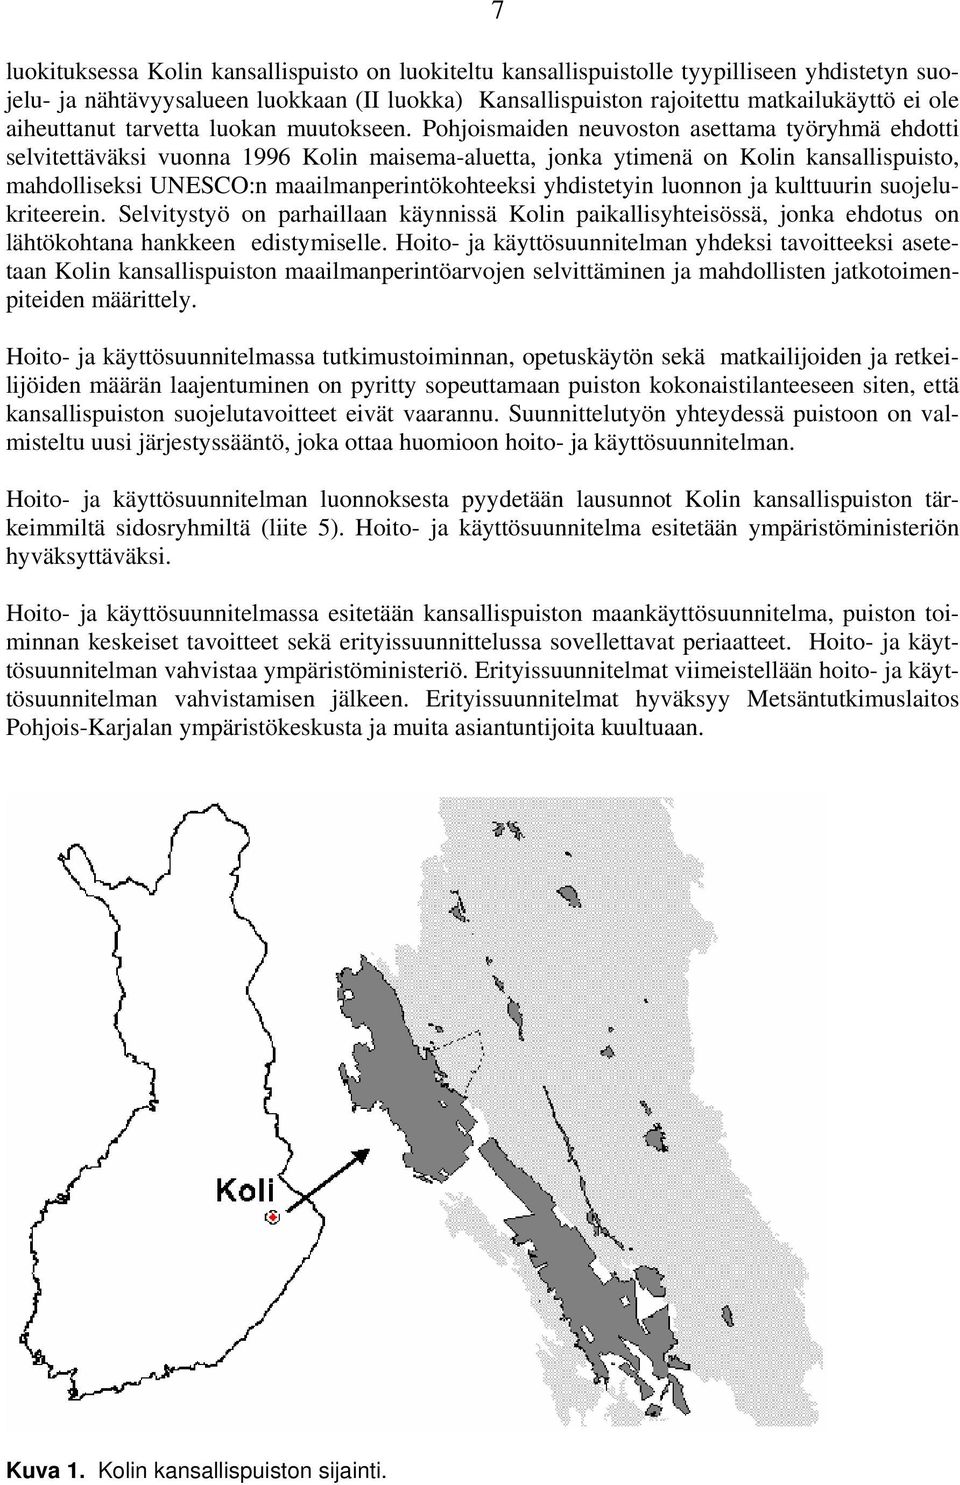 Pohjoismaiden neuvoston asettama työryhmä ehdotti selvitettäväksi vuonna 1996 Kolin maisema-aluetta, jonka ytimenä on Kolin kansallispuisto, mahdolliseksi UNESCO:n maailmanperintökohteeksi